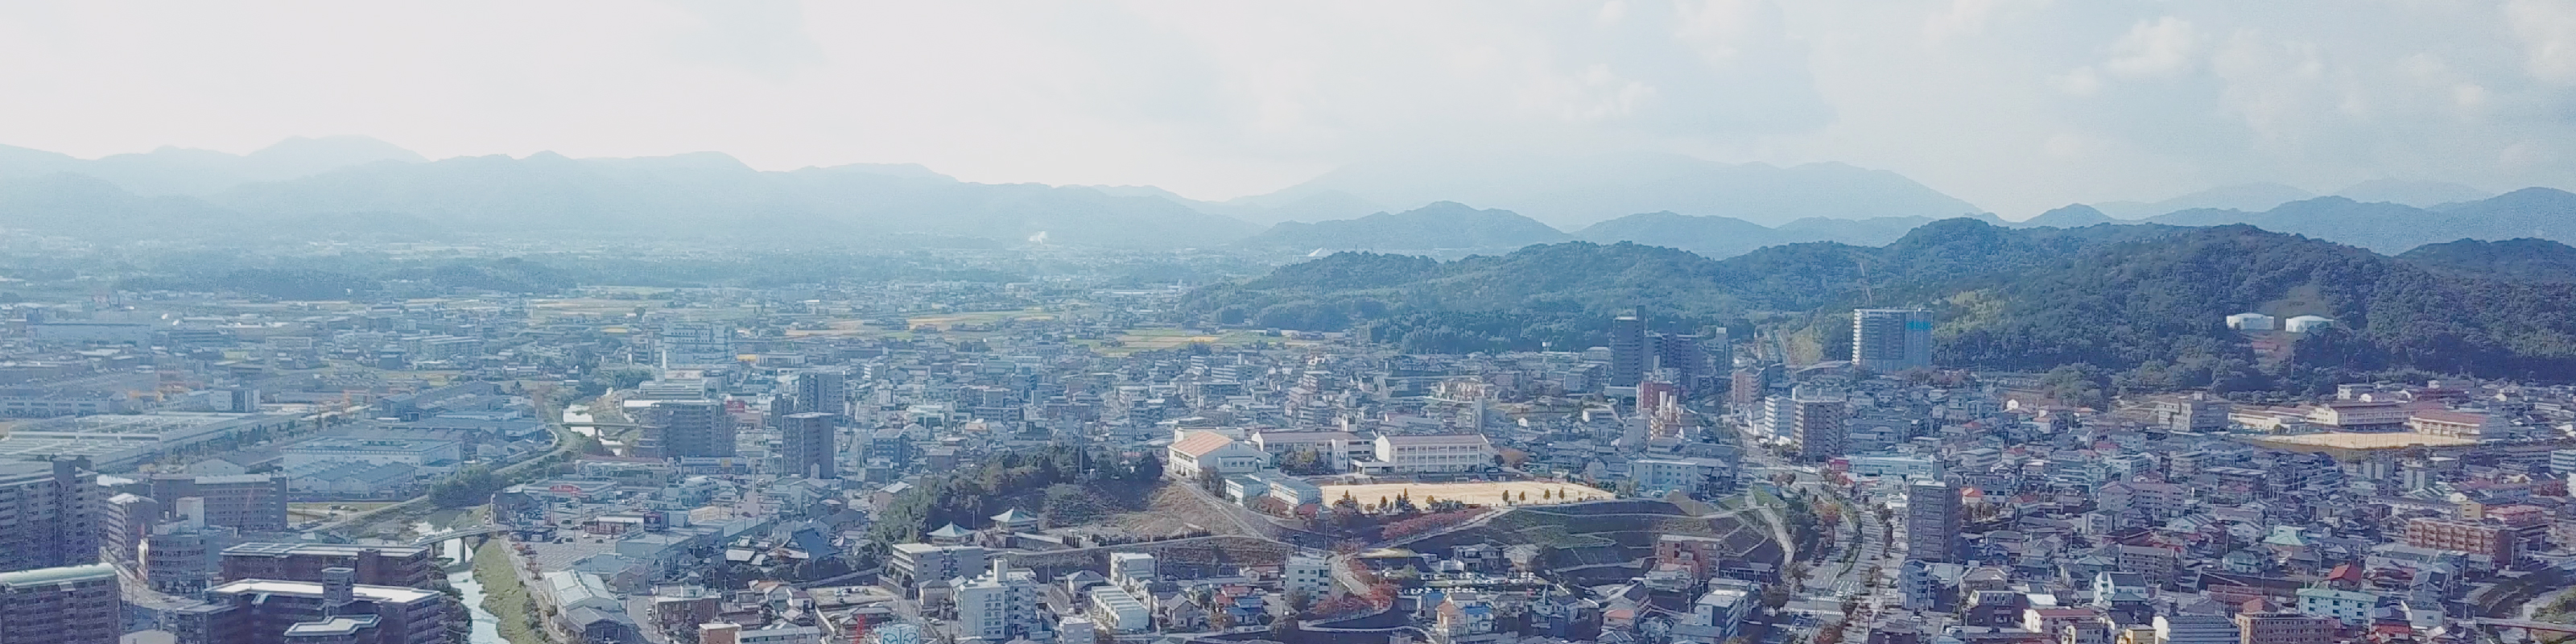 広島市風景